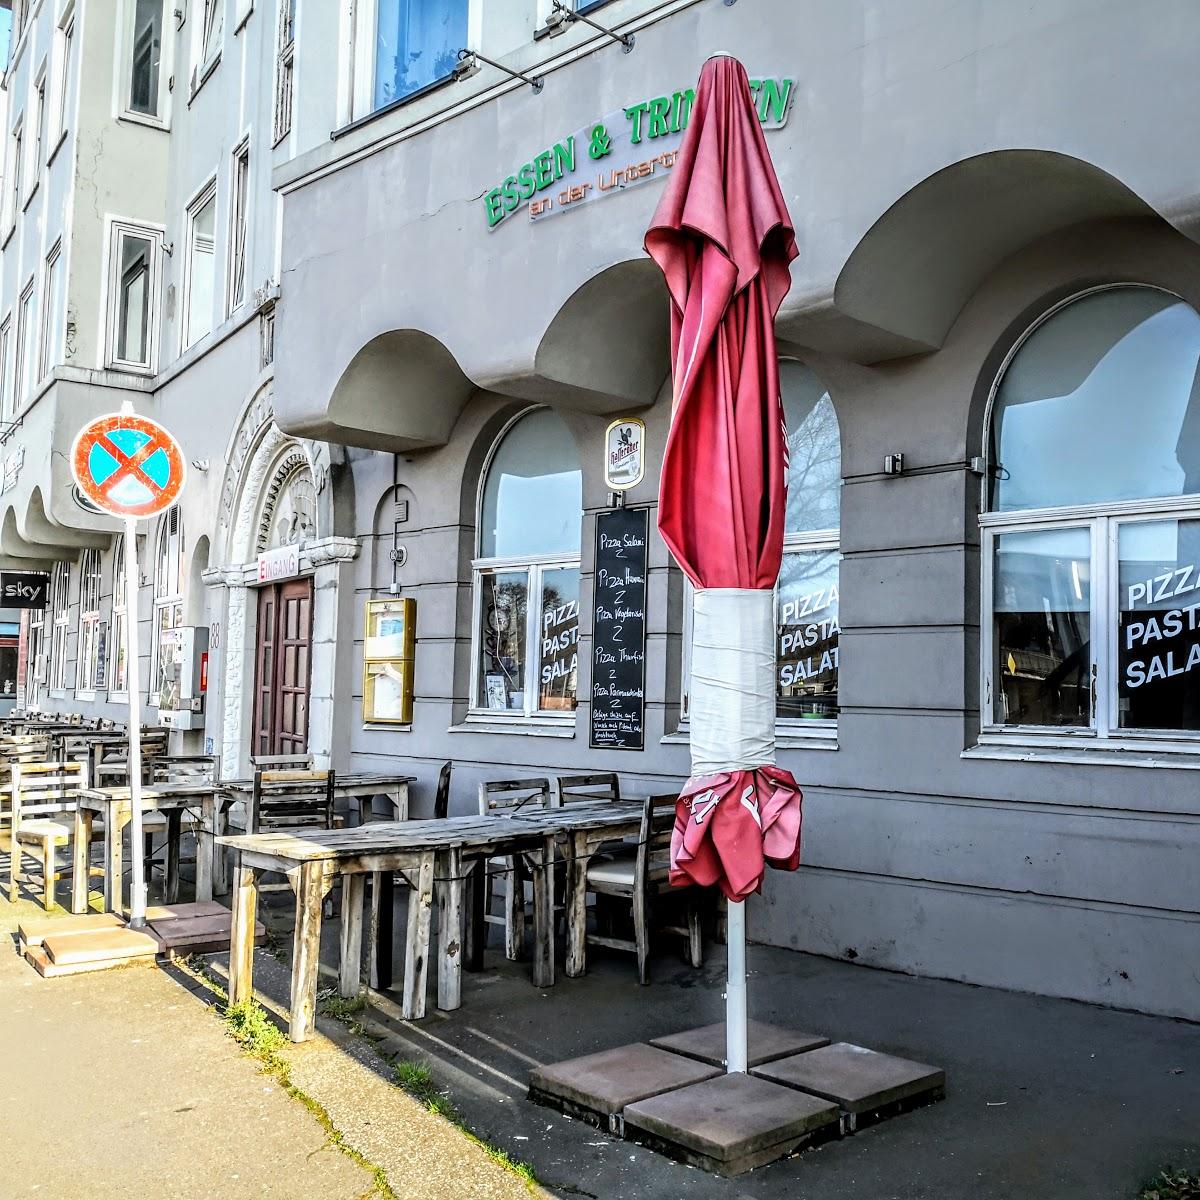 Restaurant "Essen & Trinken" in Lübeck